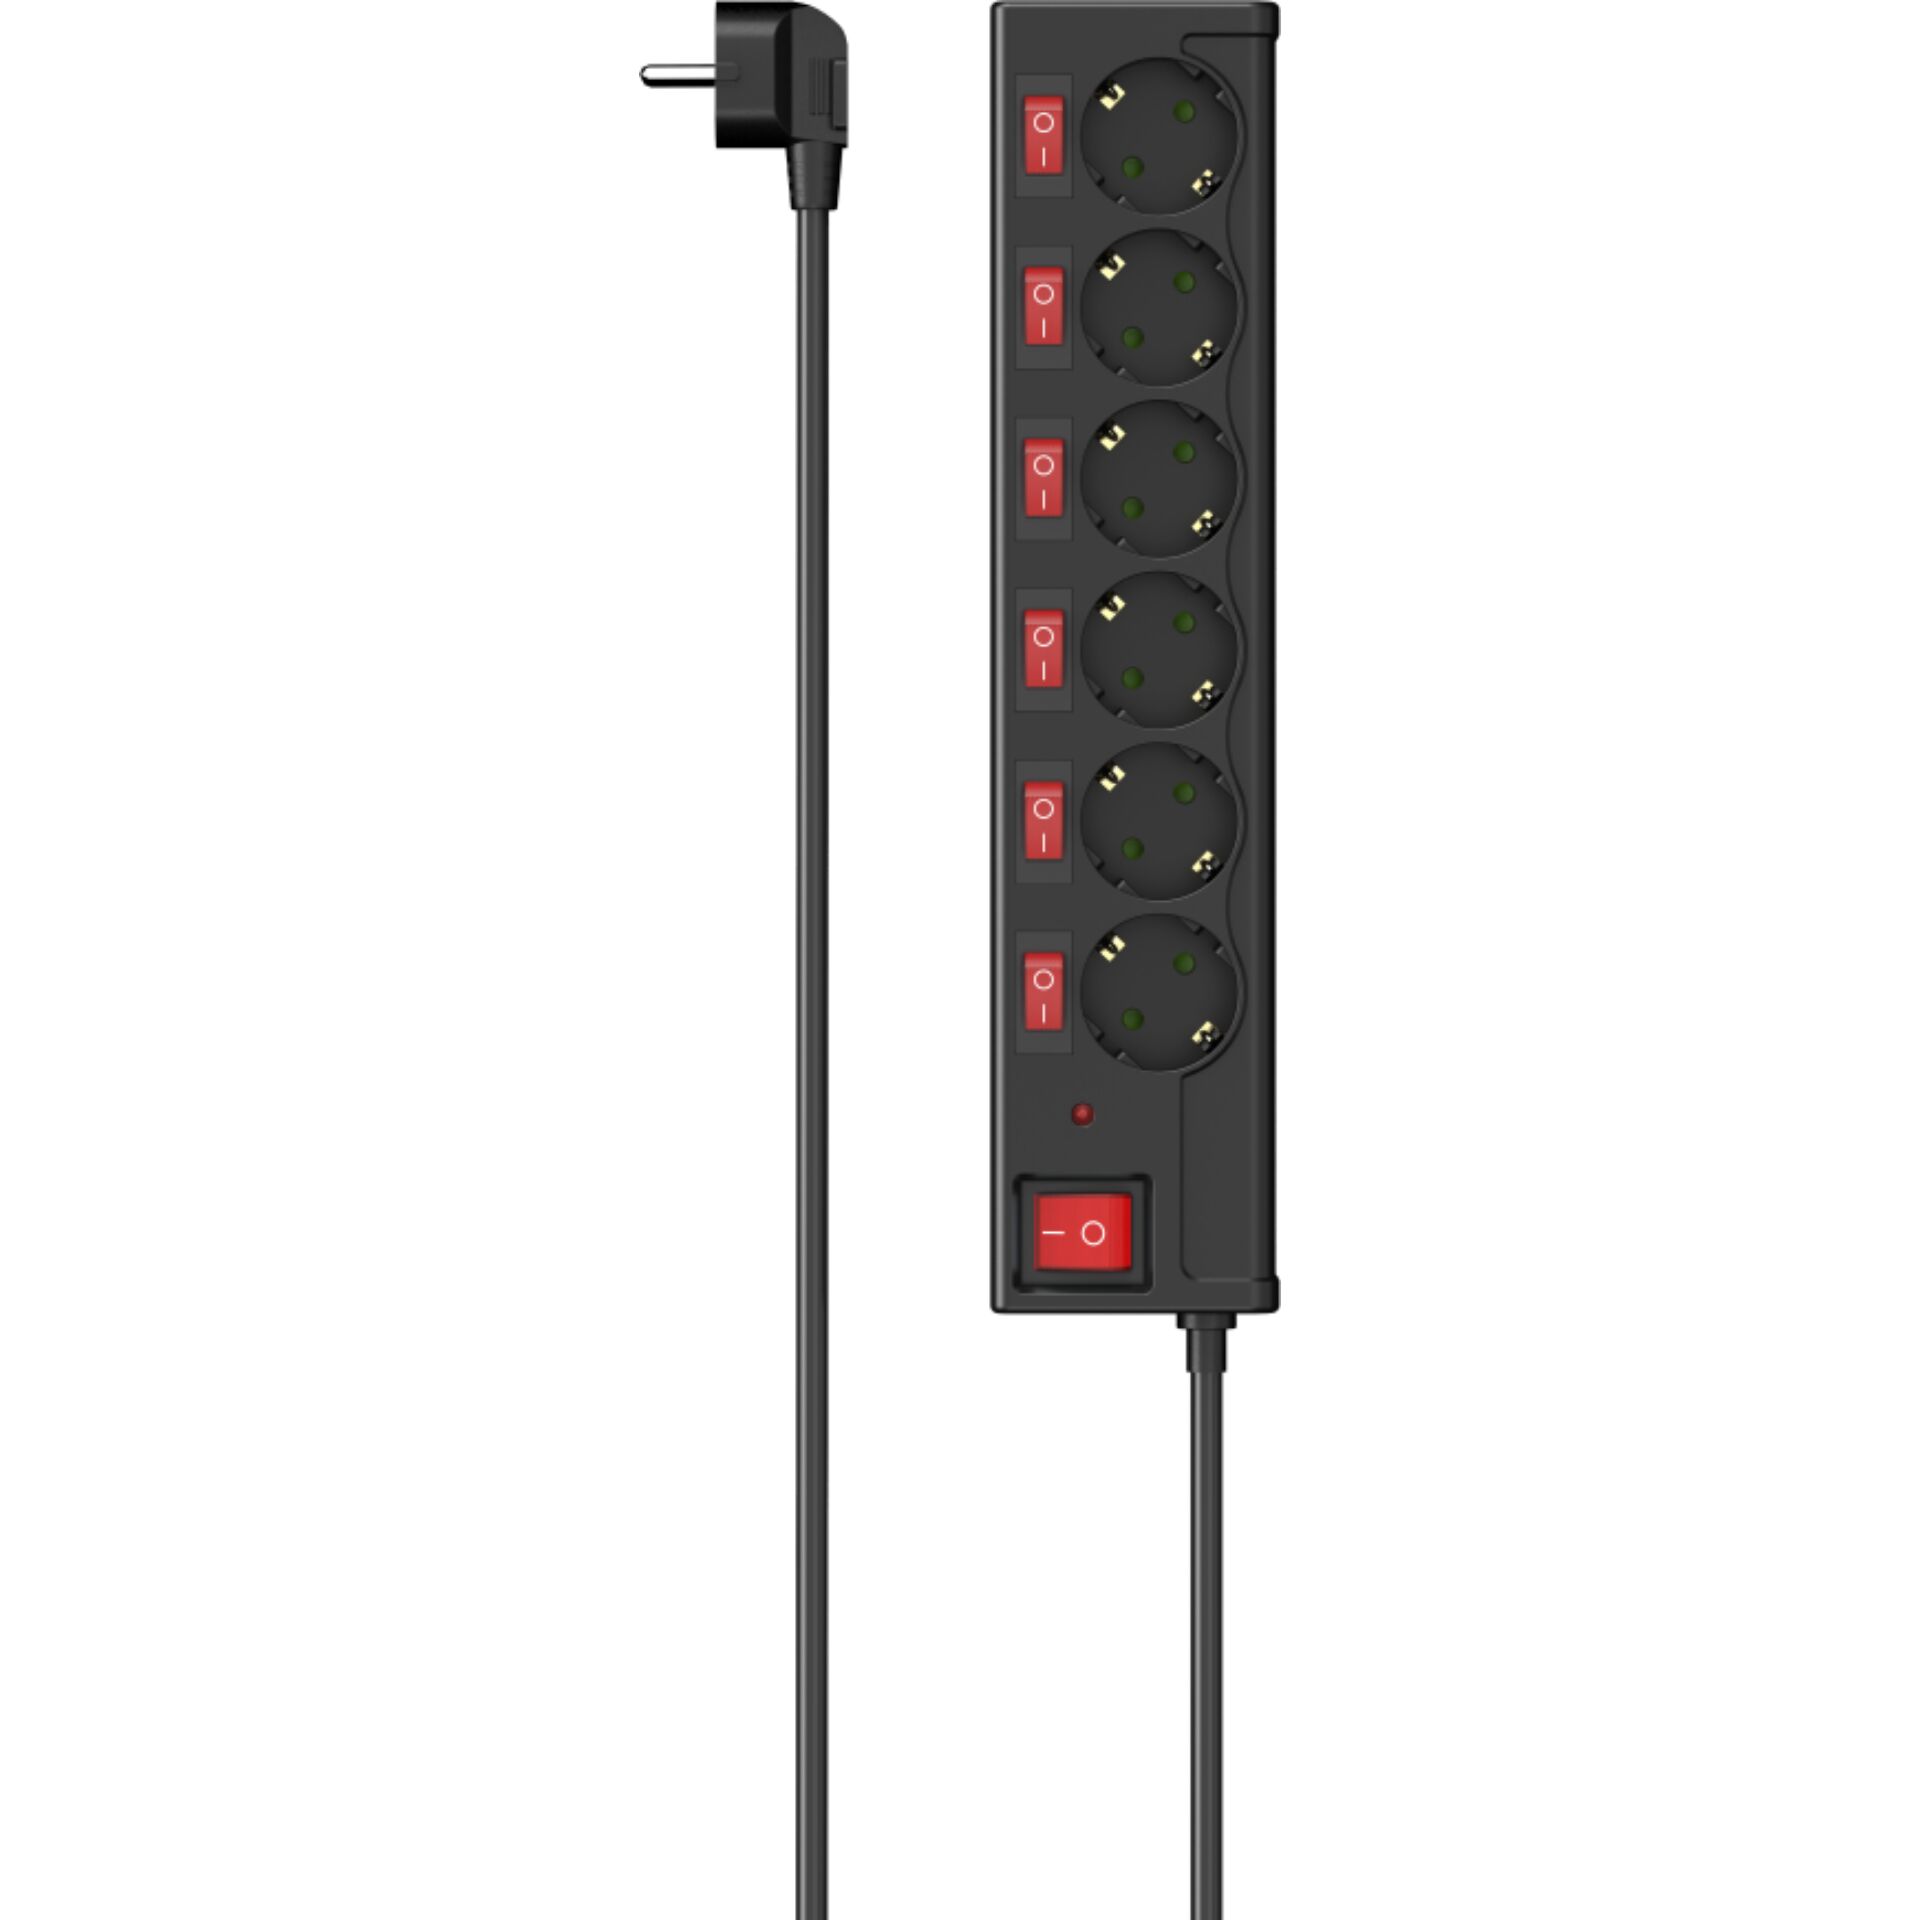 6er Hama Steckdosenleiste mit Schalter, Überspannungsschutz, einzeln schaltbar, 1.4m, schwarz